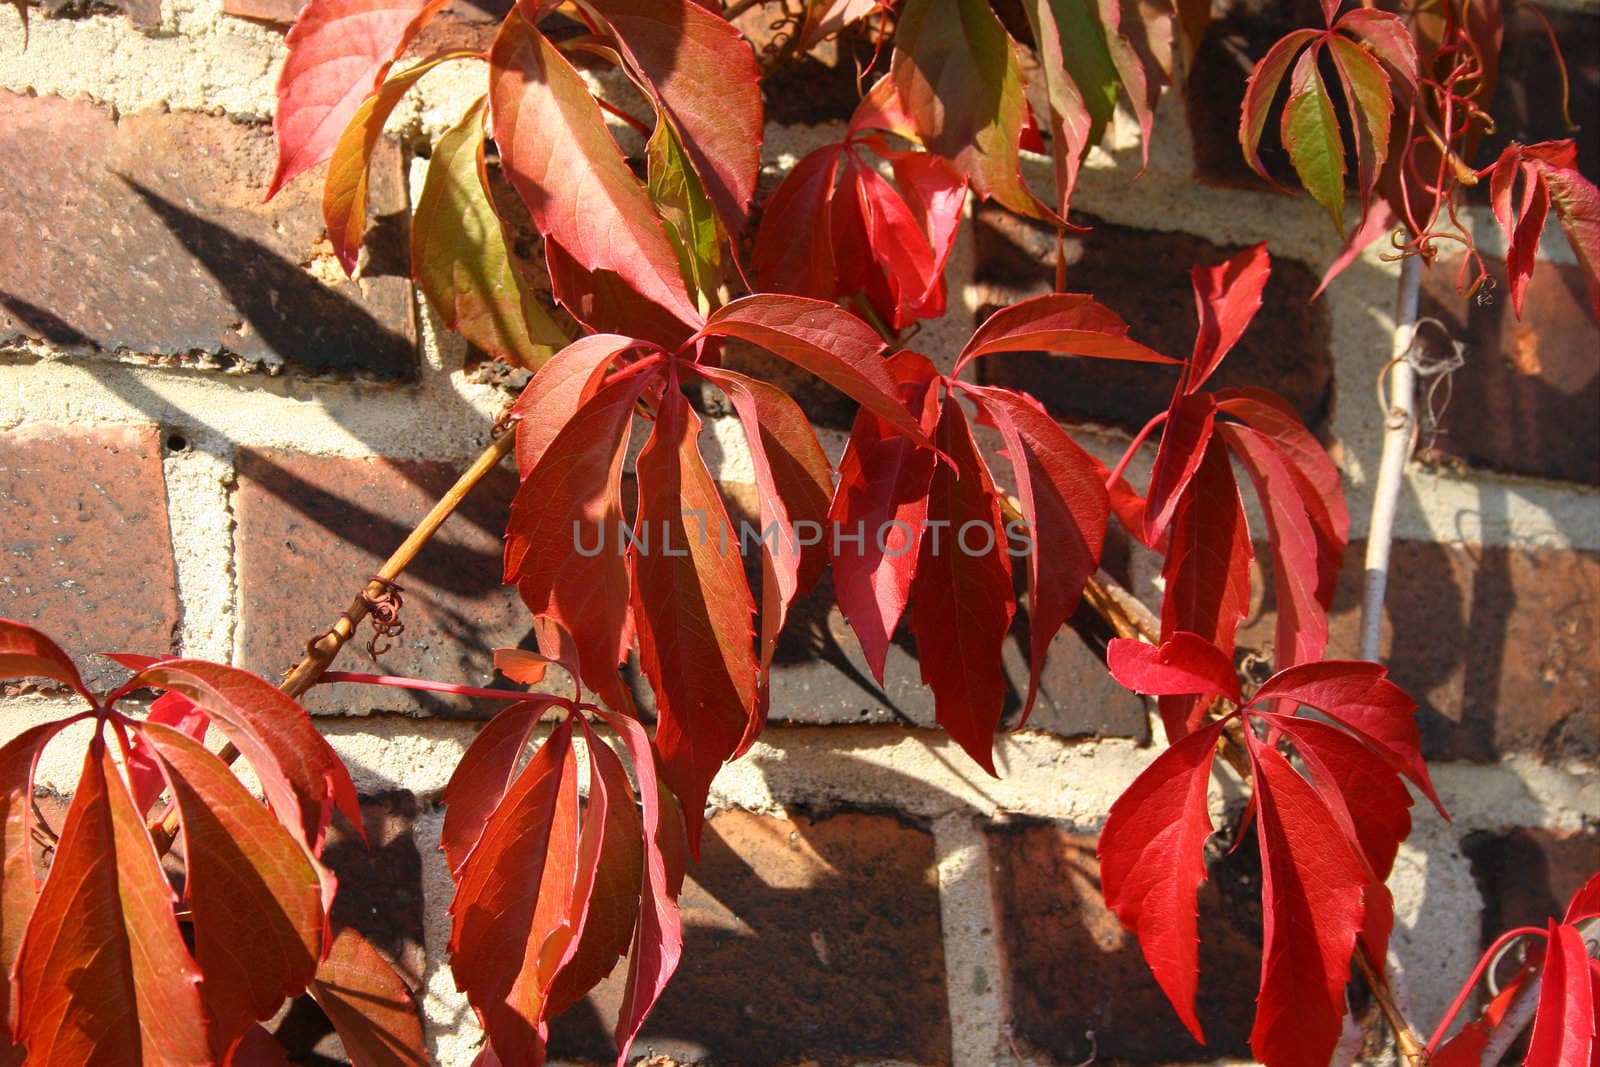 Virginia creeper (Parthenocissus quinquefolia) in autumn with colored leaves